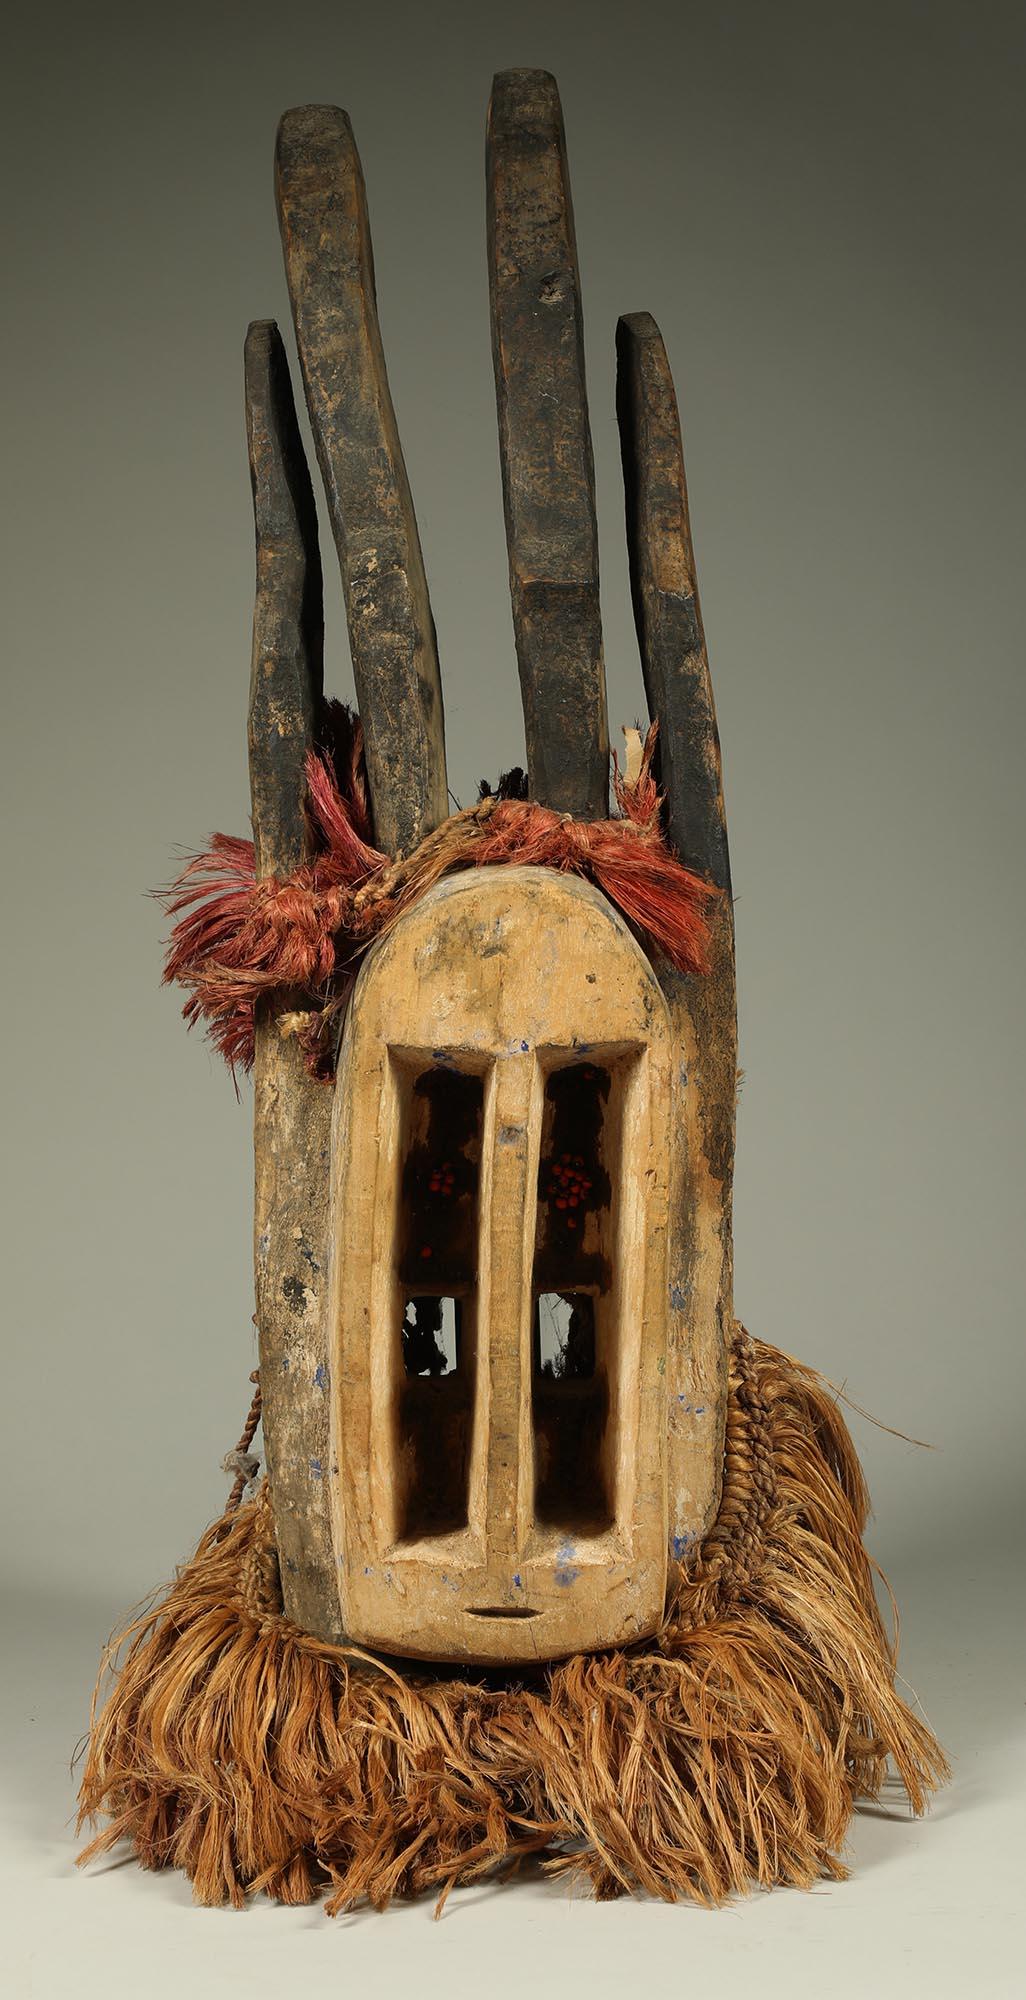 Masque cubiste d'antilope en bois sculpté Dogon avec raphia attaché, du Mali en Afrique de l'Ouest. Grands yeux verticaux, petite bouche fendue. Une paire de cornes d'antilope noircies et incurvées, sculptées, se dressent sur le sommet de la tête,